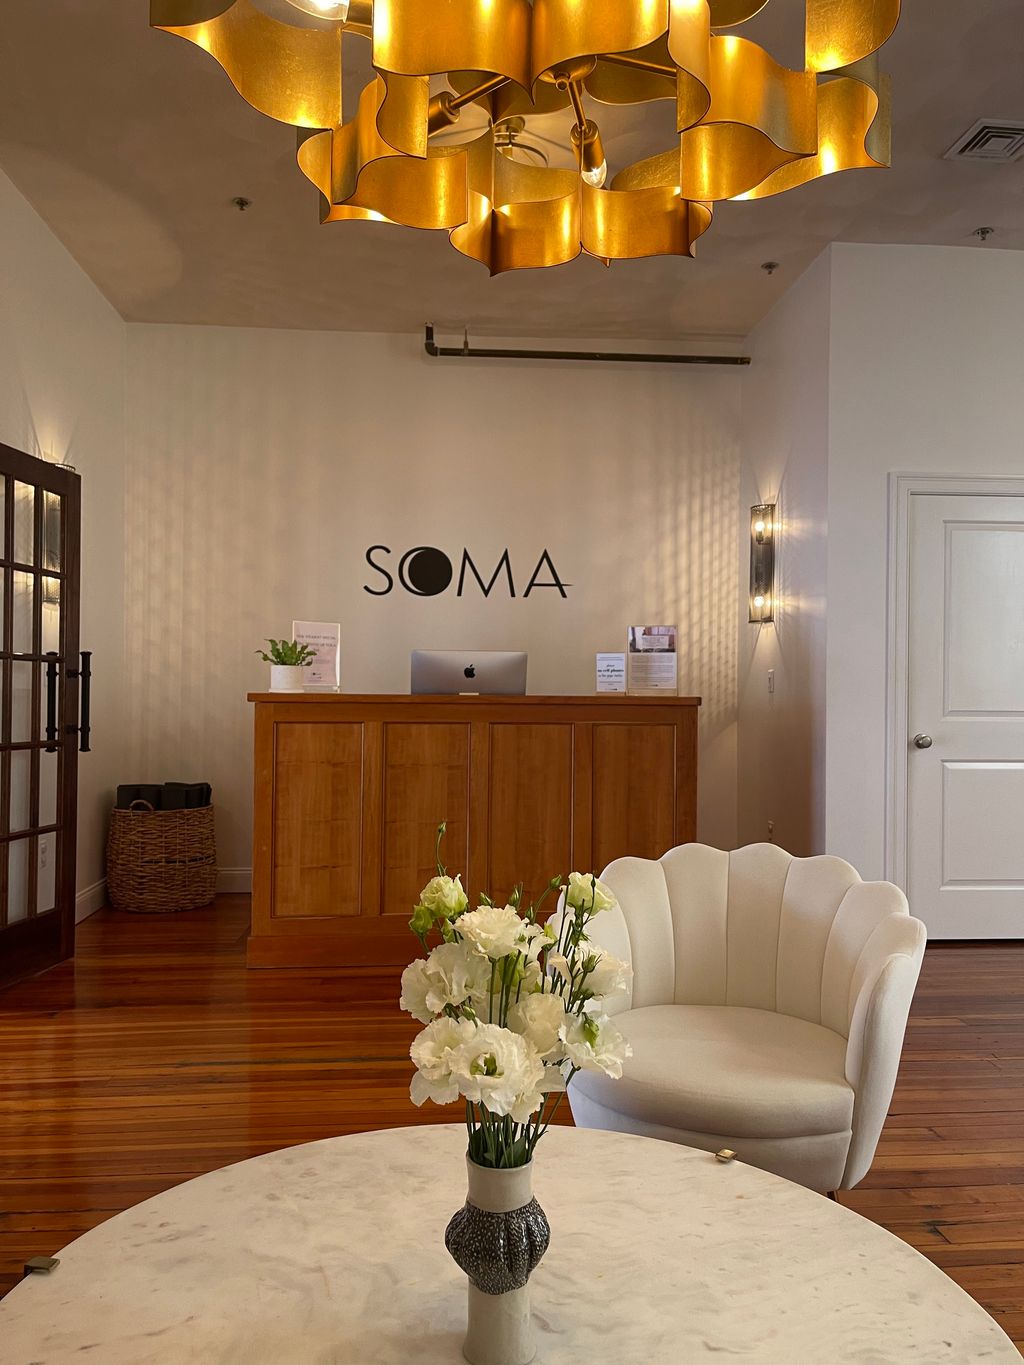 Soma-Yoga-Center-1